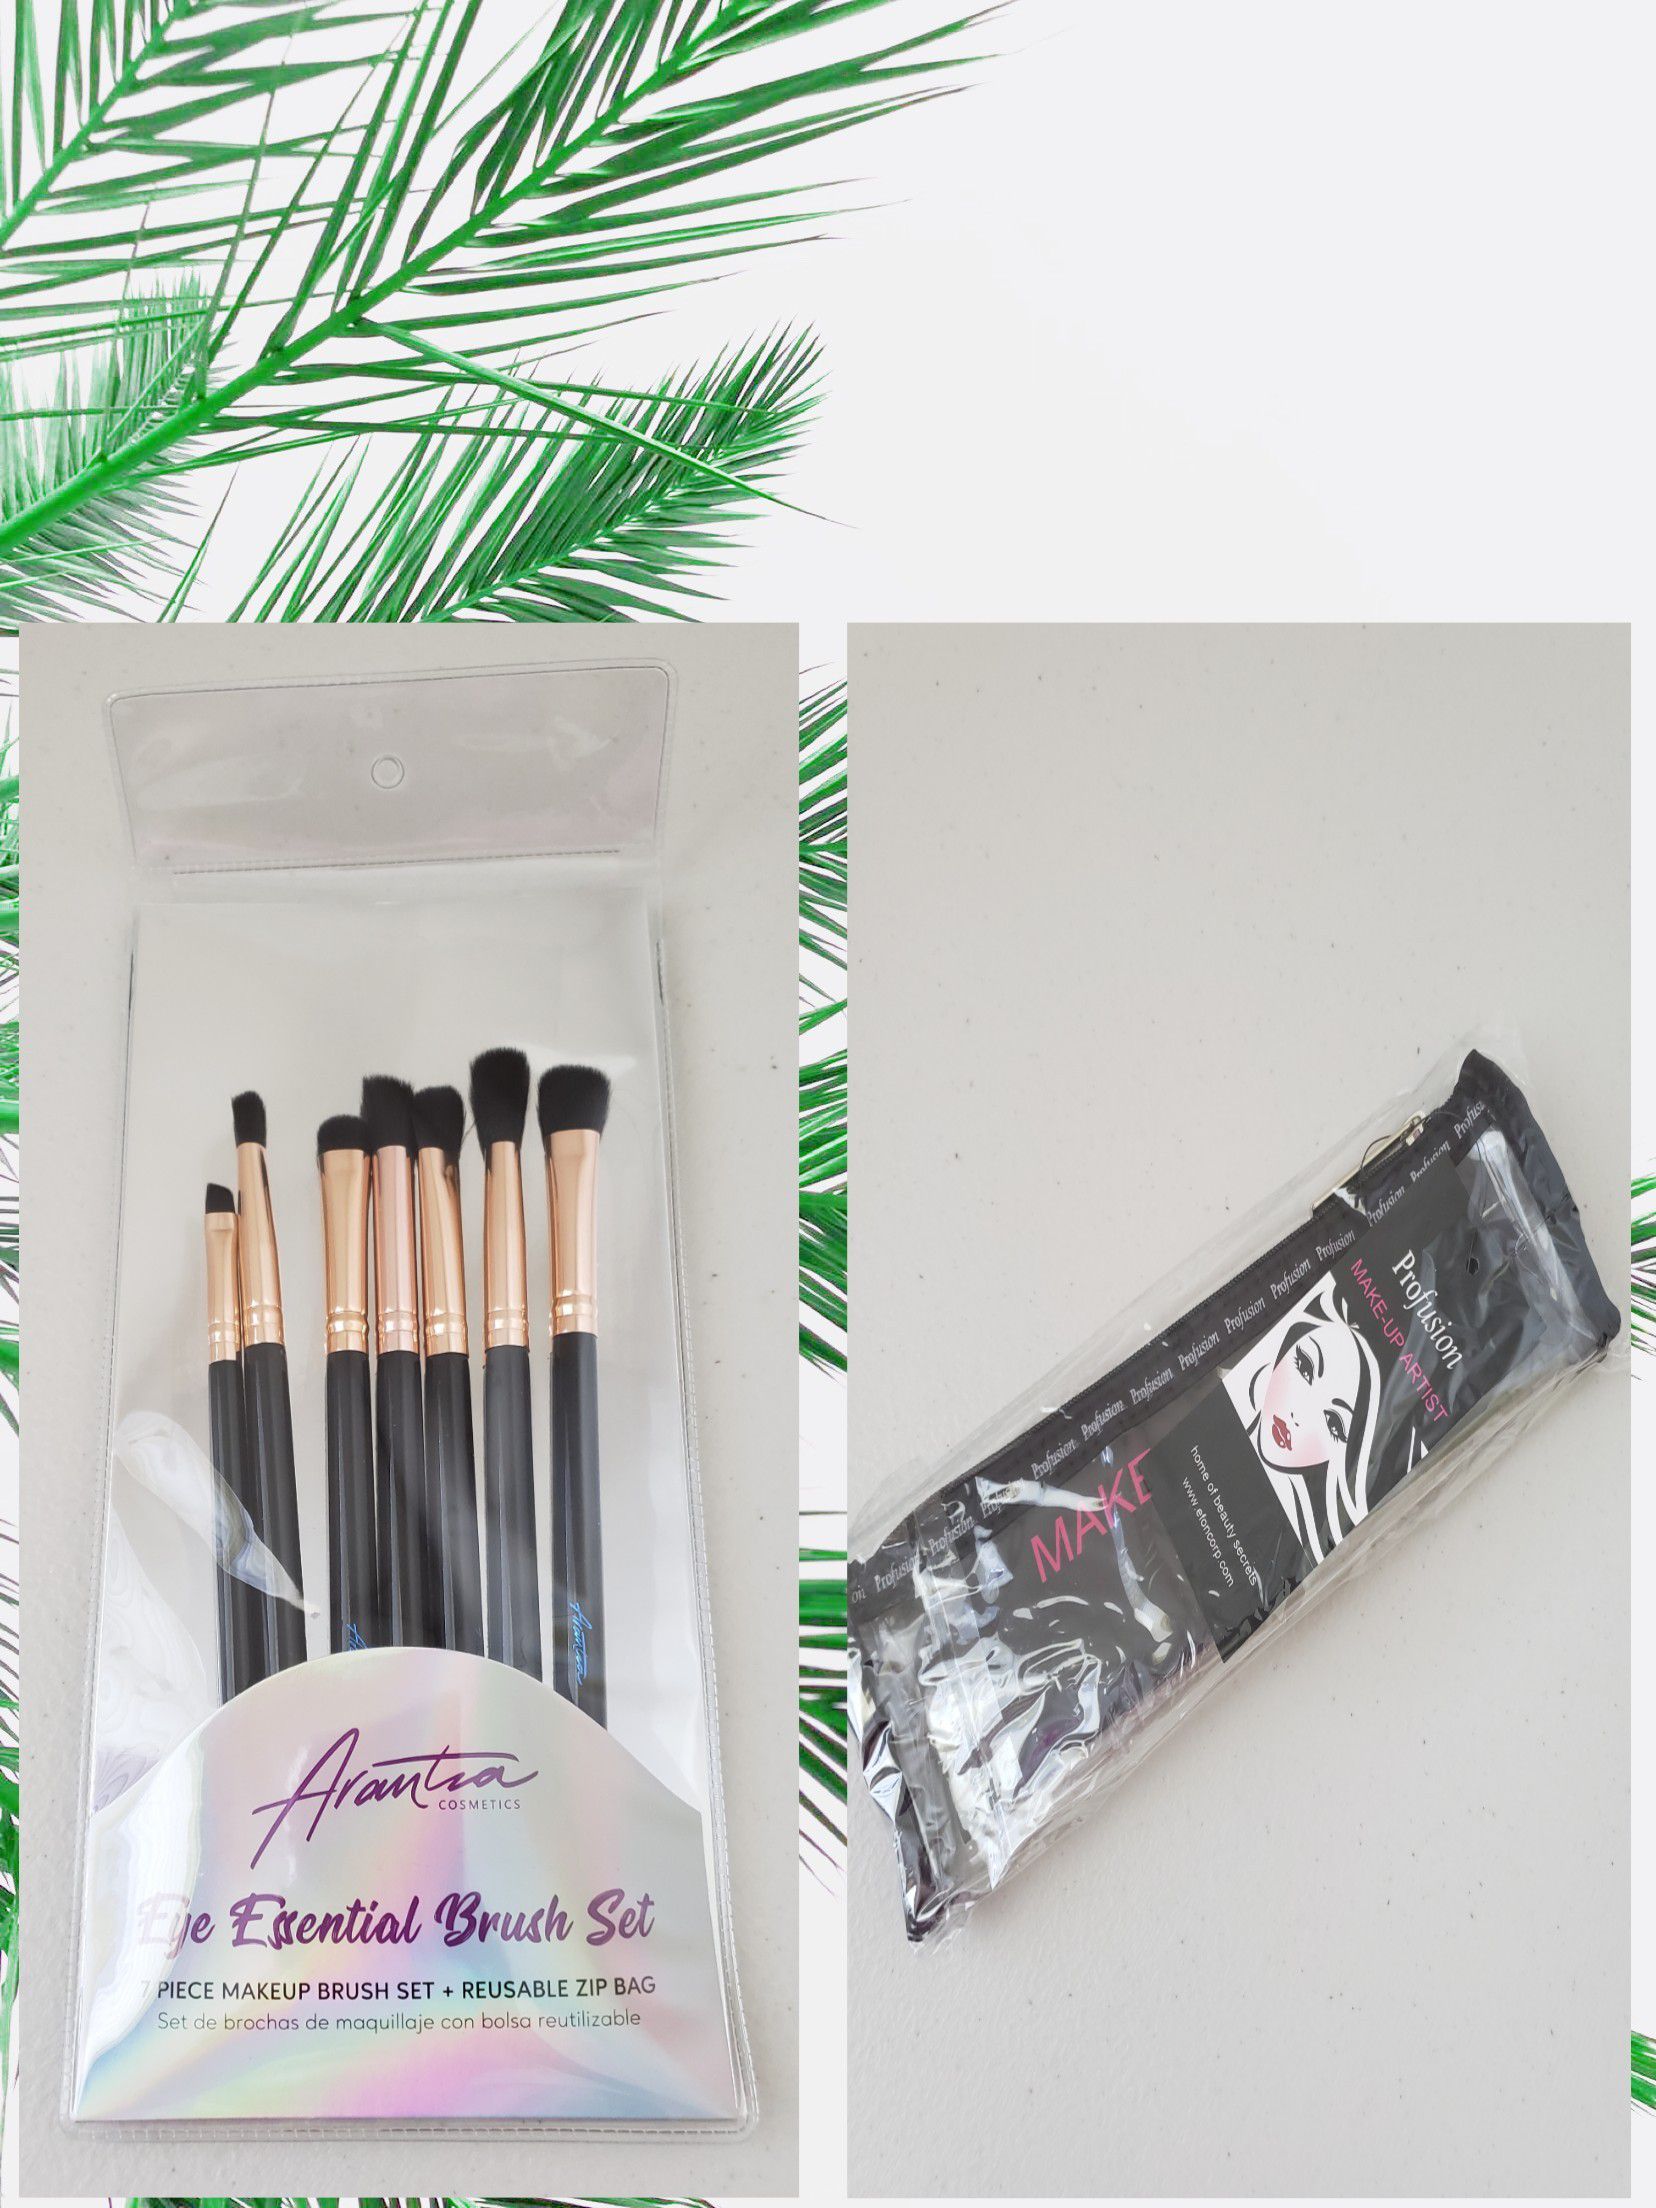 Arantza brushes and cosmetic bag